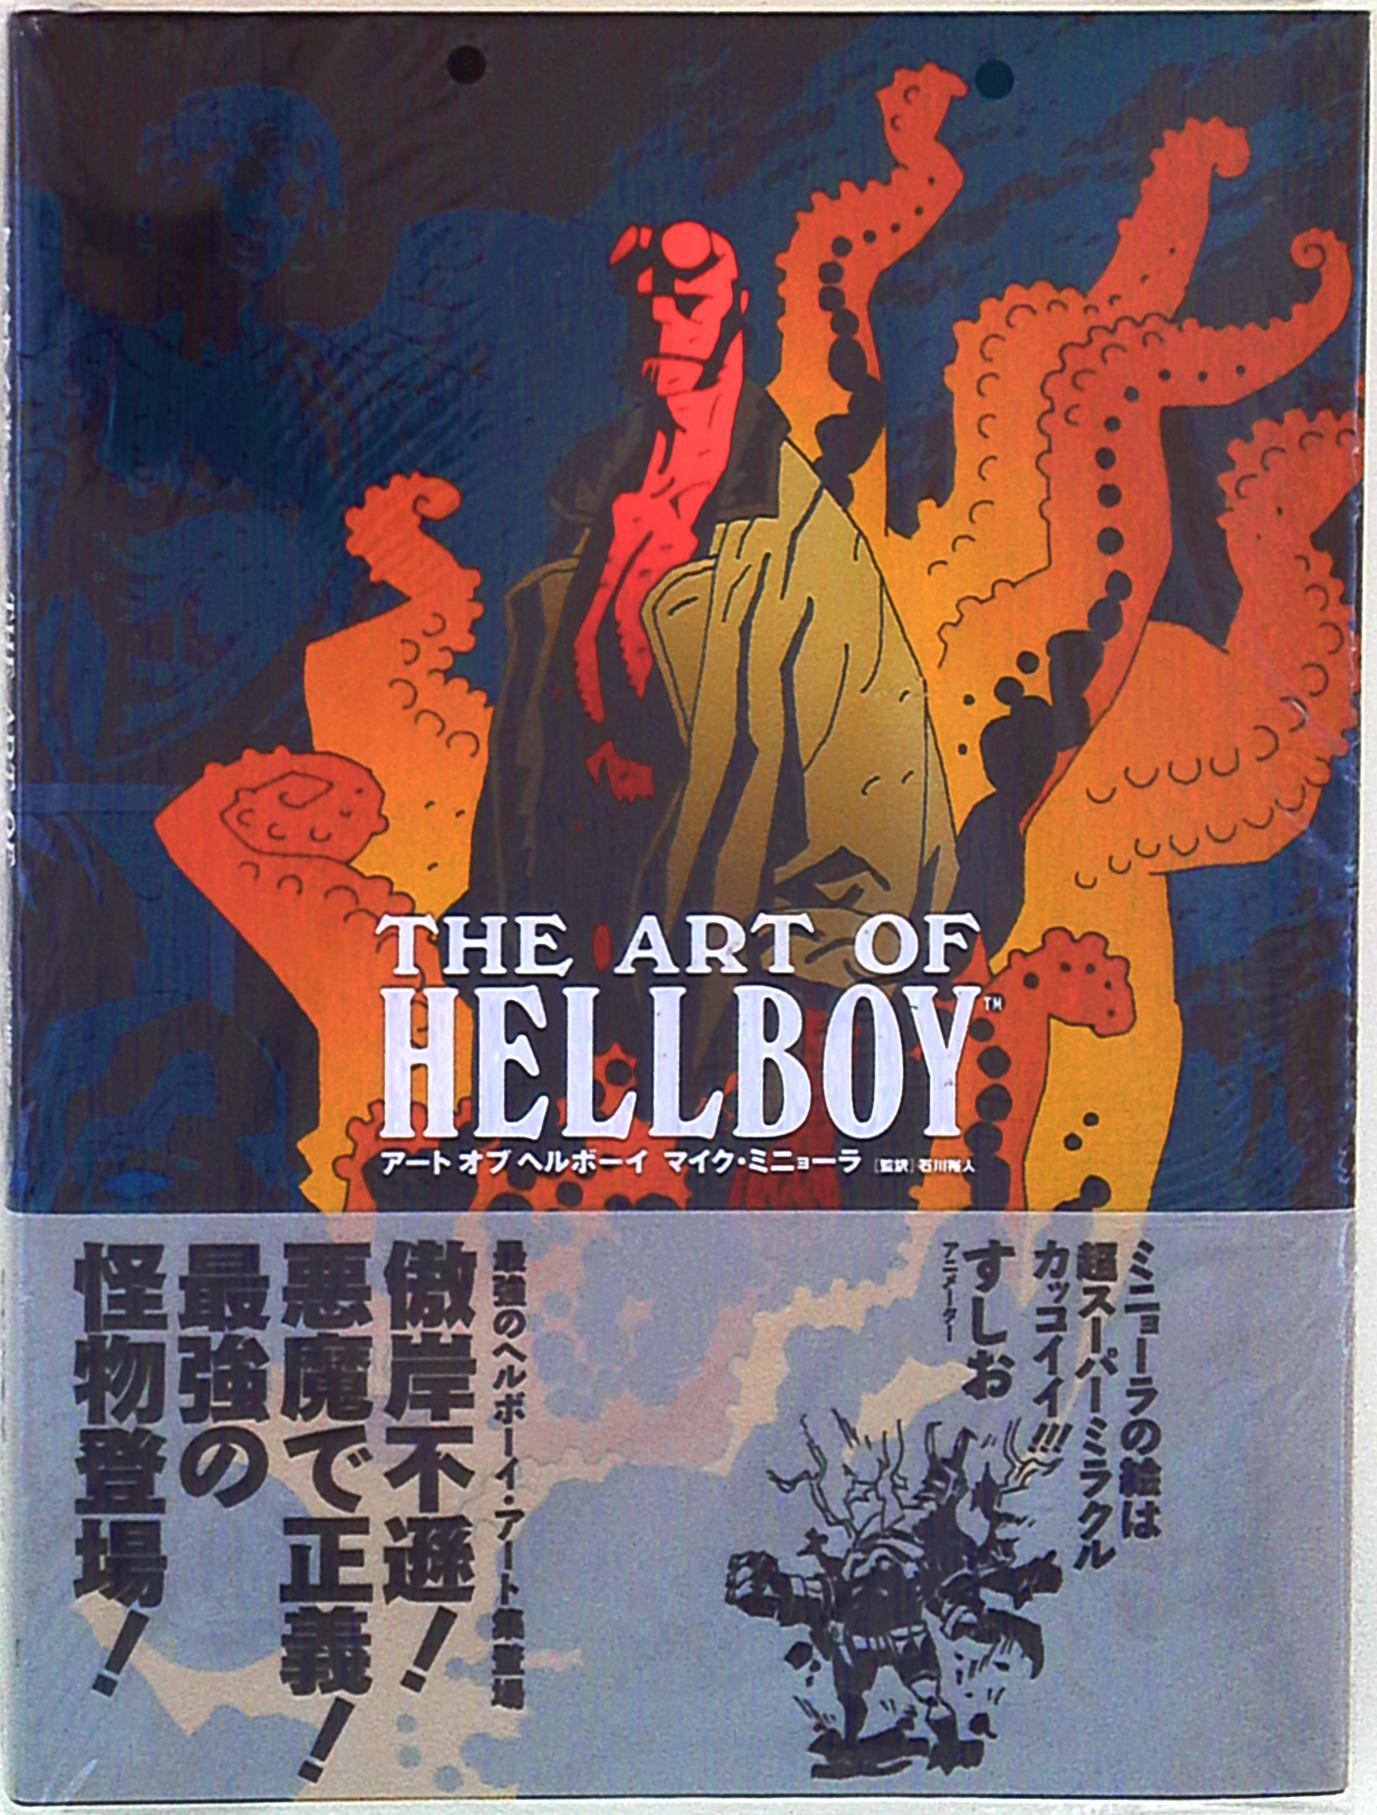 The art of hellboy アートオブヘルボーイ マイクミニョーラ 